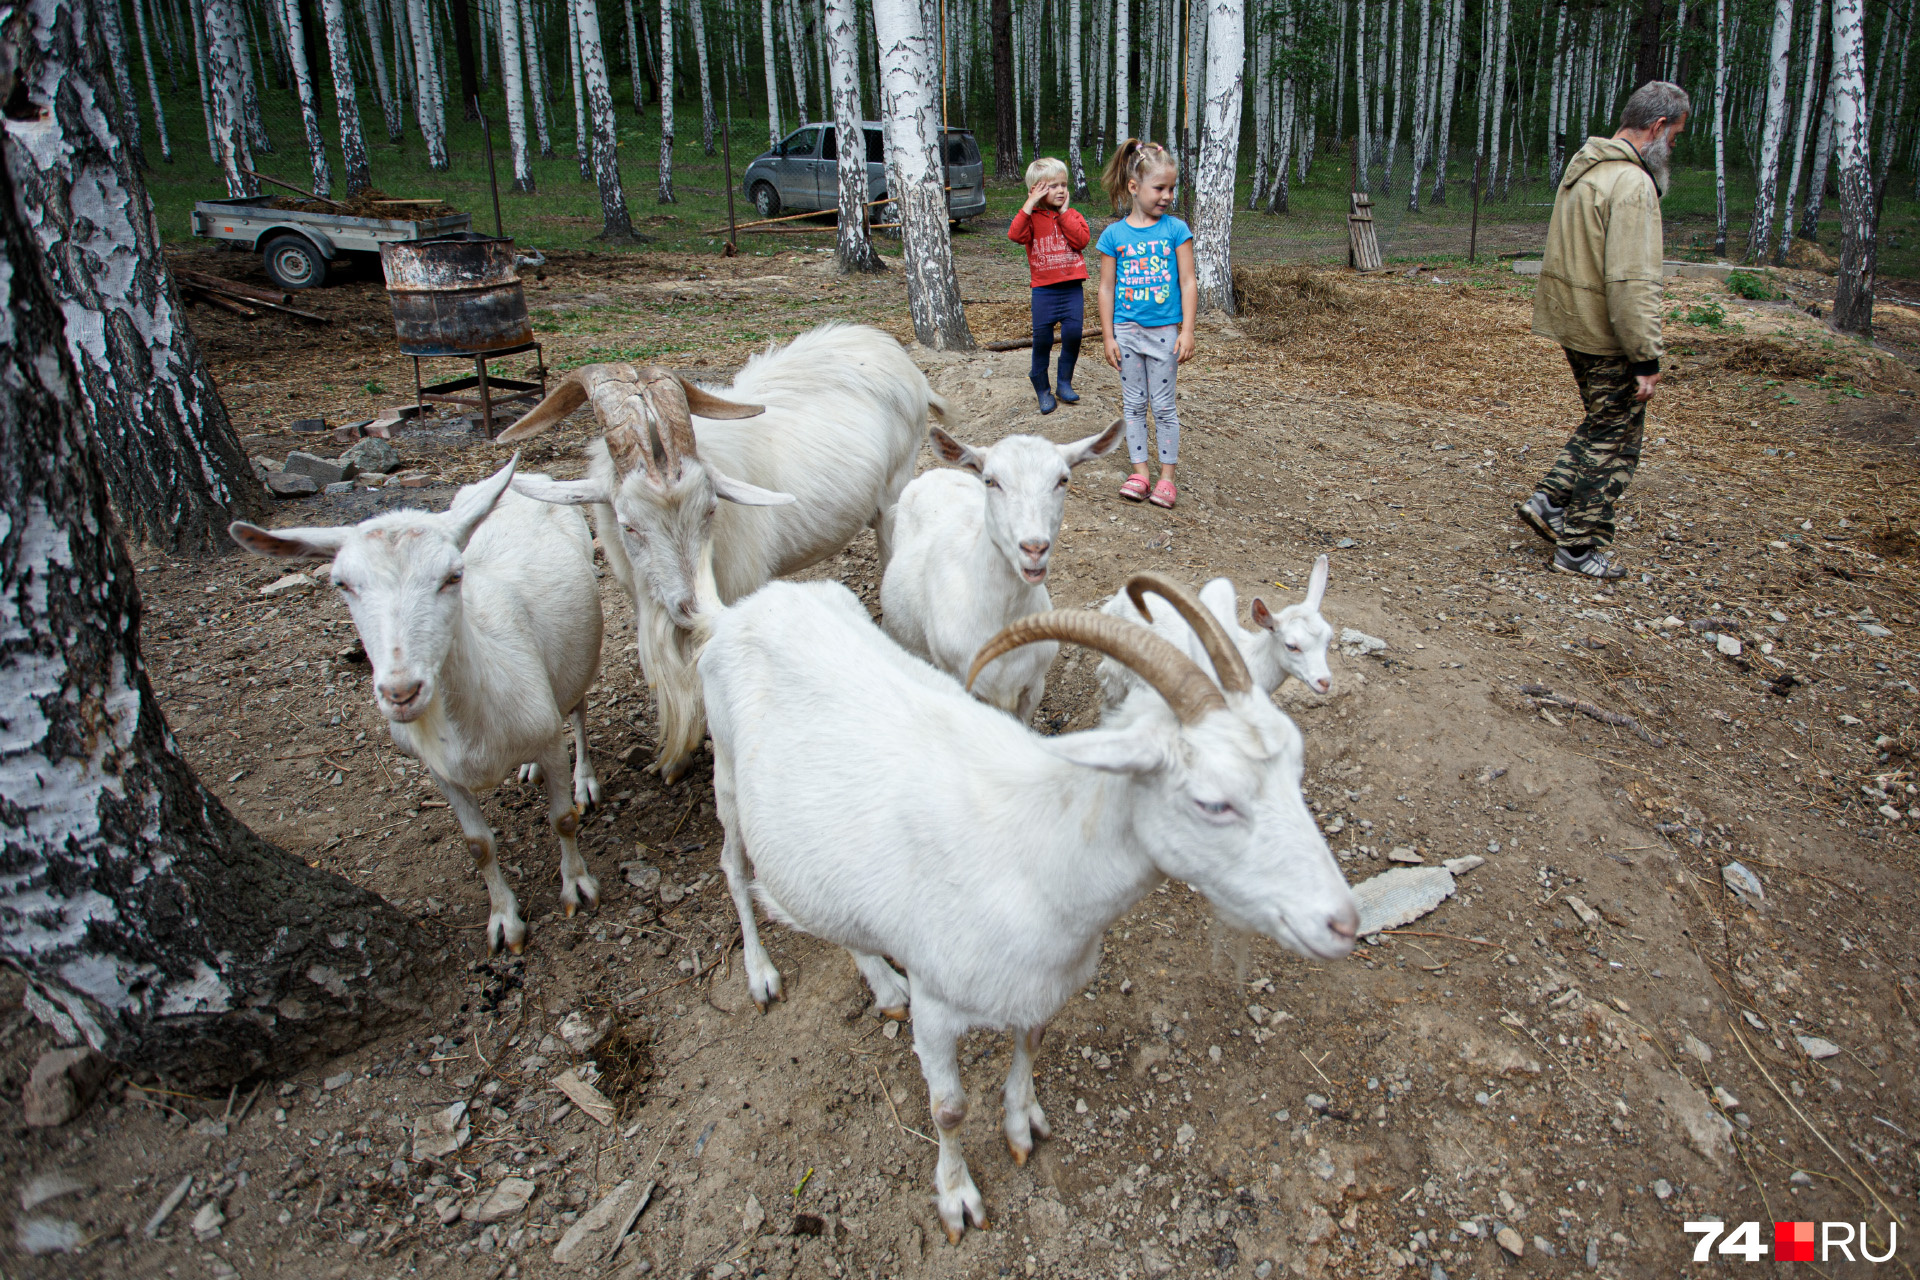 Козёл Елисей и козы знают свои имена и охотно откликаются на призыв хозяина